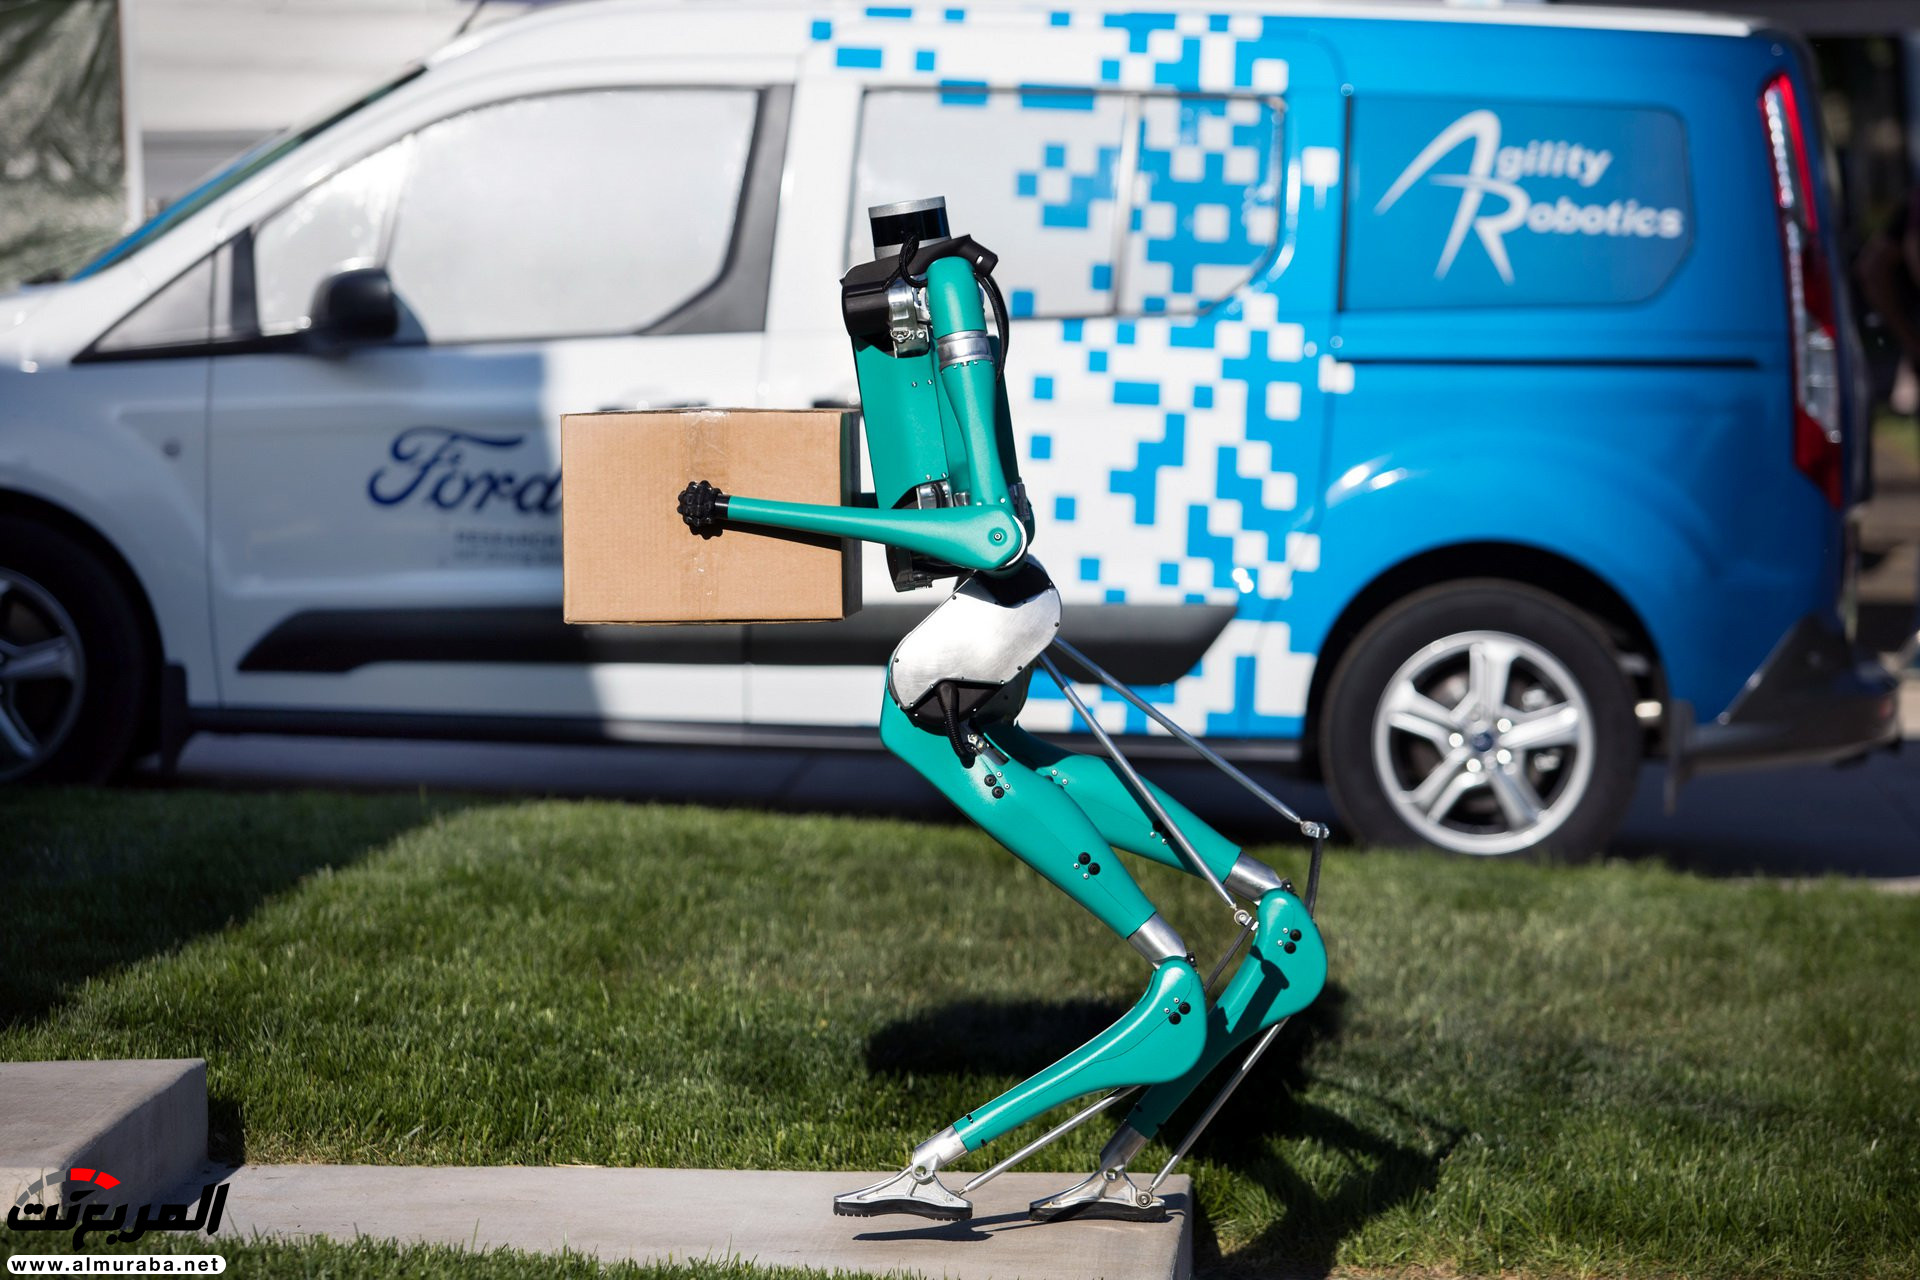 "بالفيديو والصور" فورد طورت روبوت يوصّل الطلبيات للمنازل 25